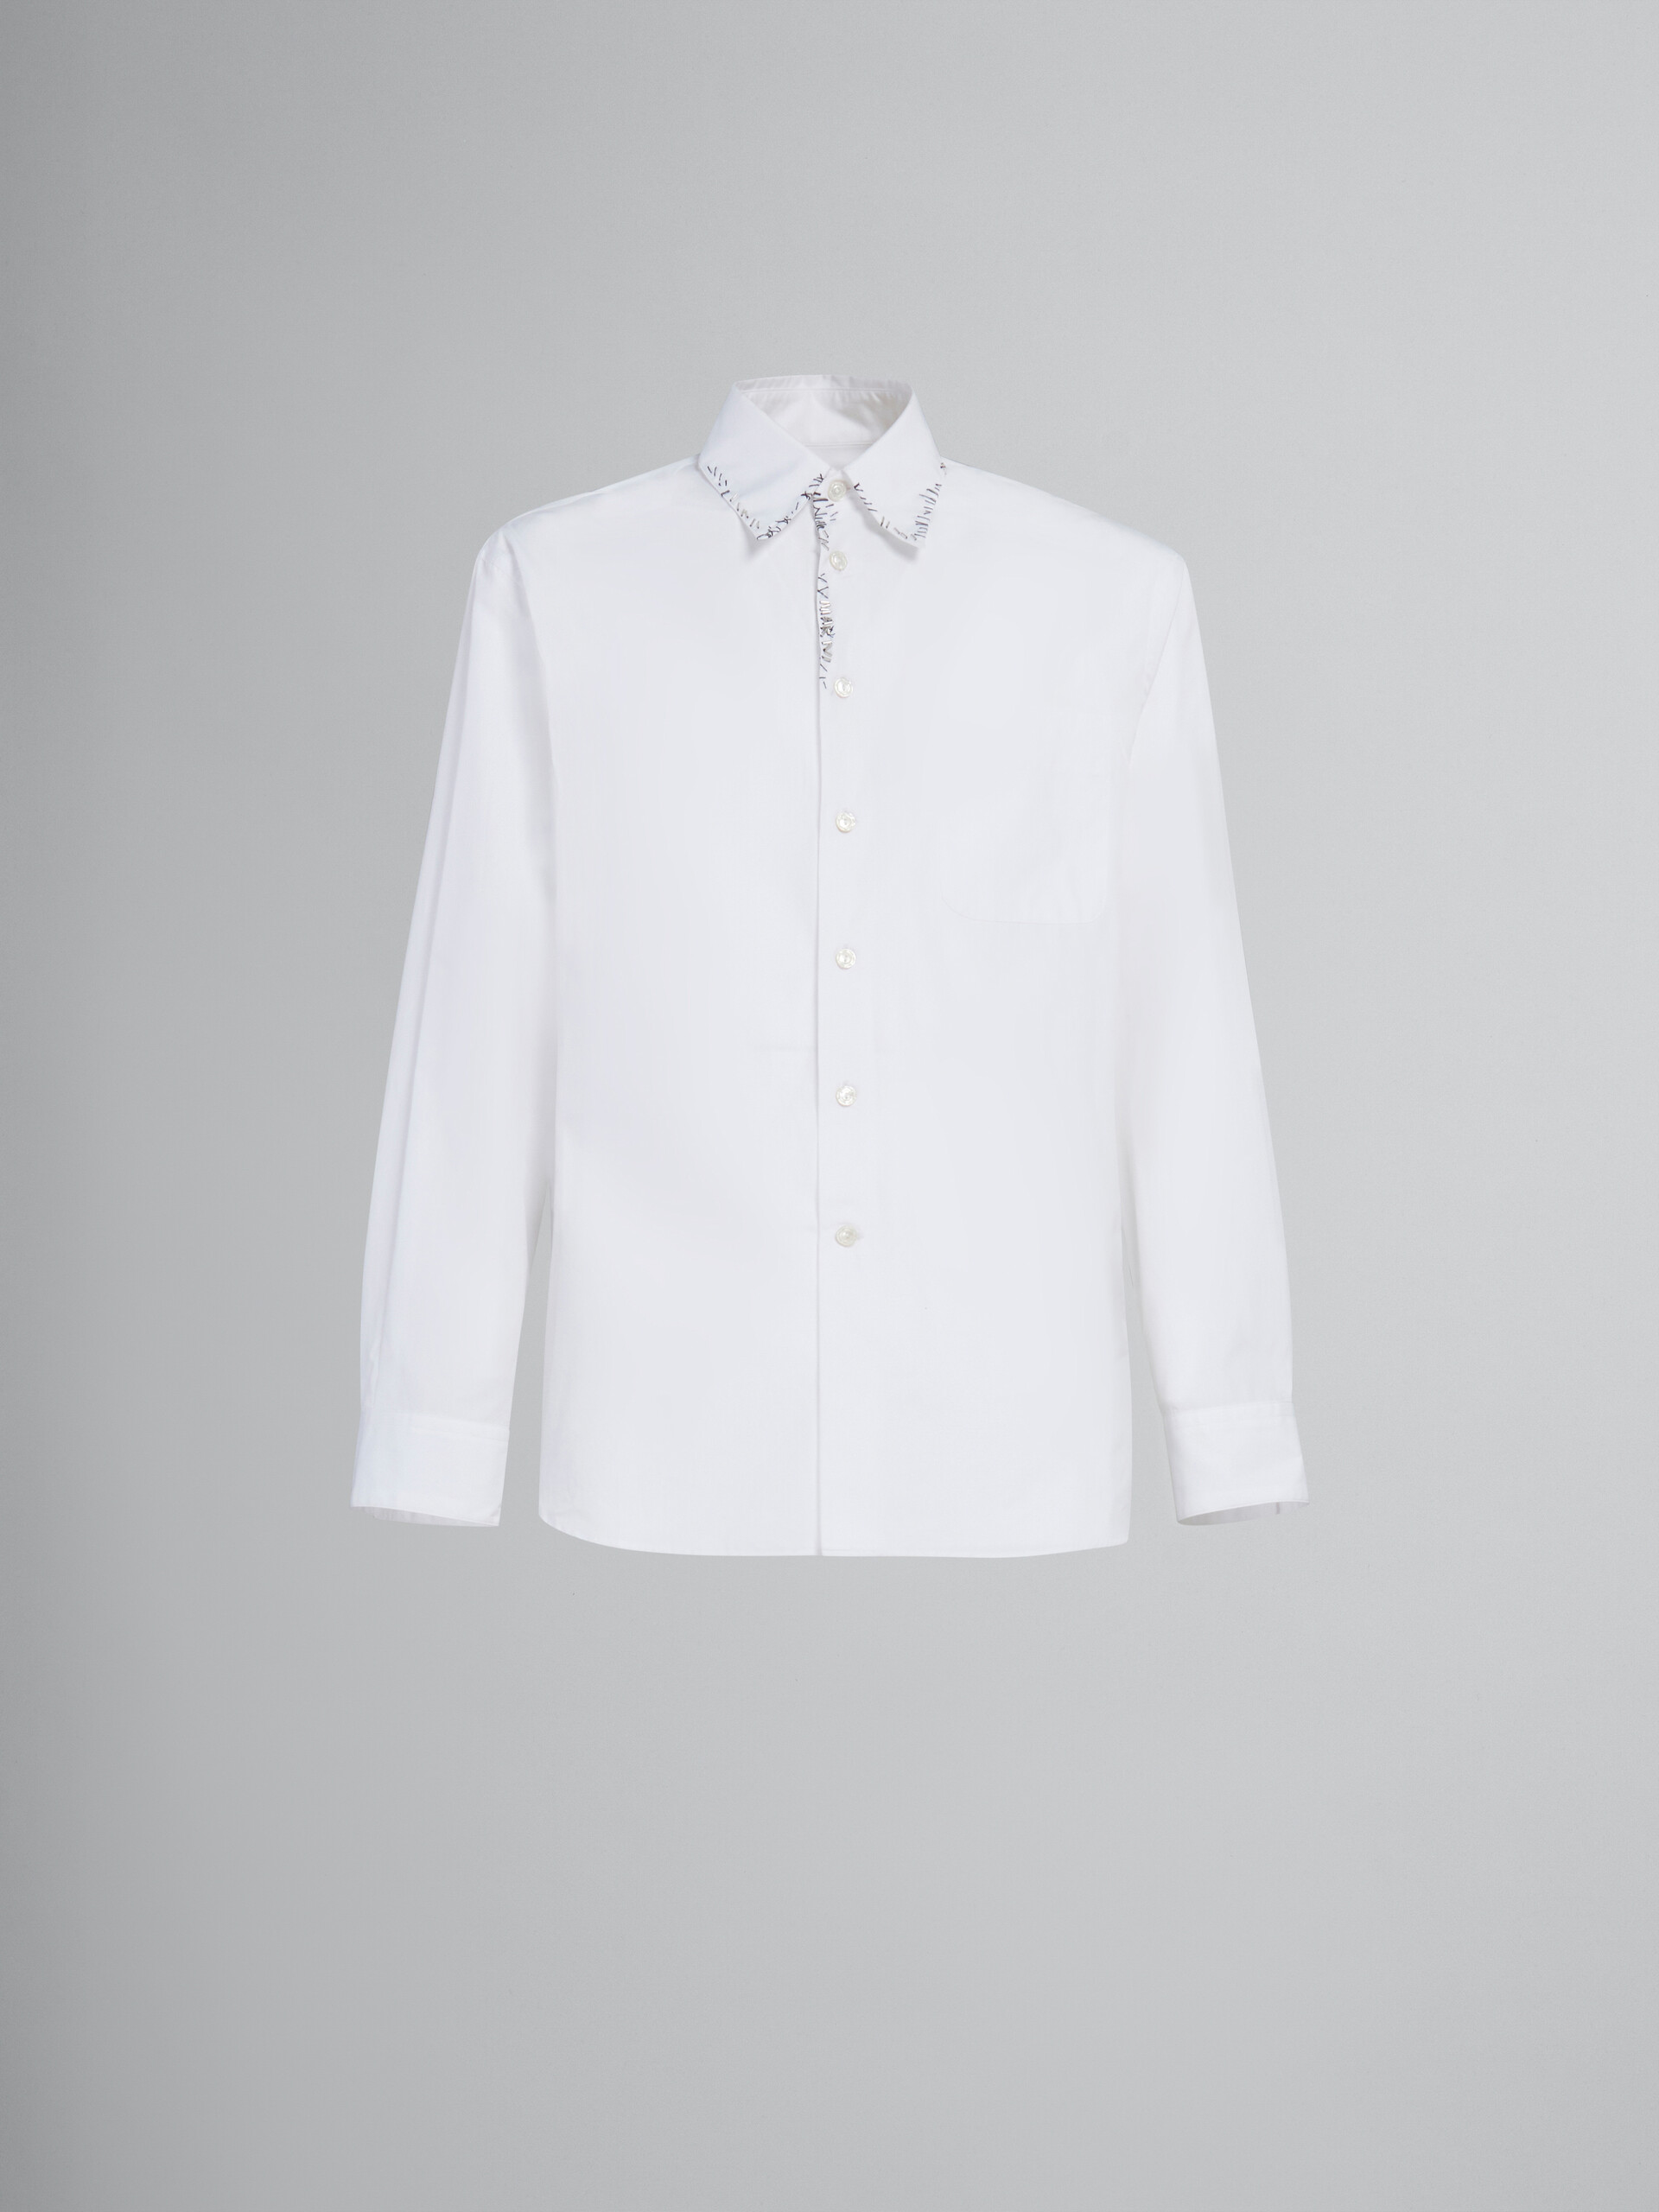 ホワイト ポプリン製シャツ、ビーズメンディング装飾 - シャツ - Image 1